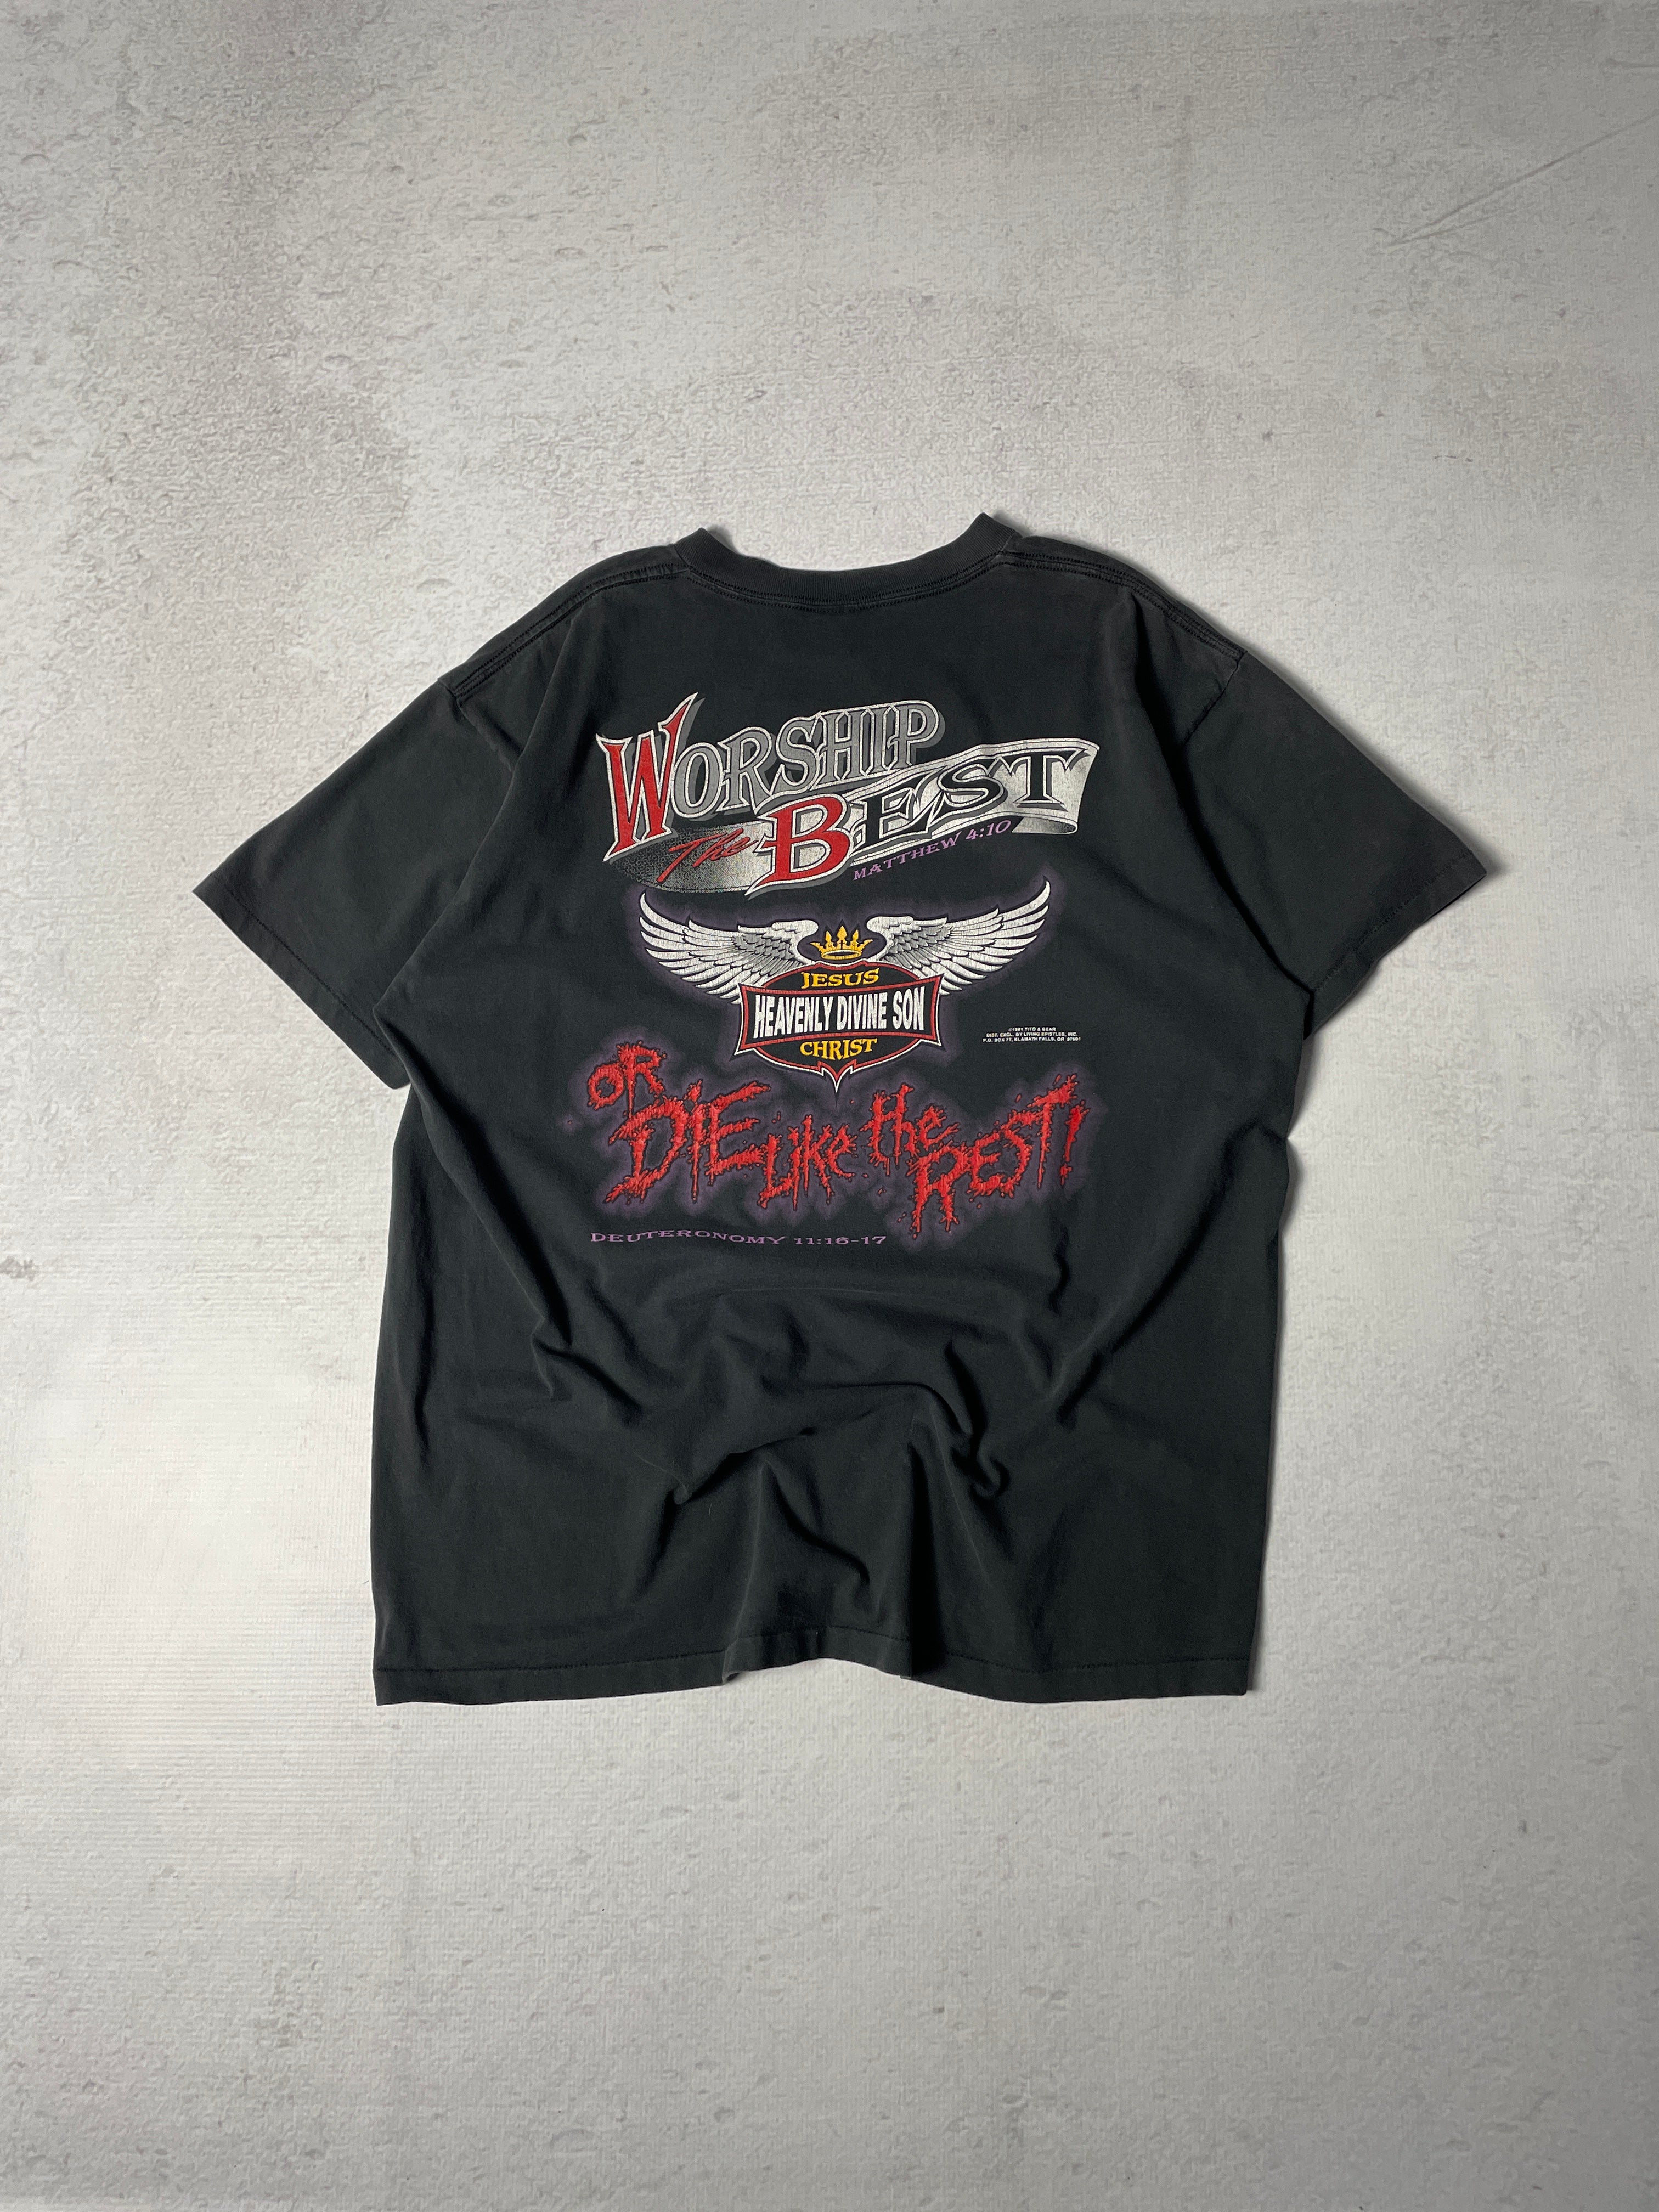 Vintage 1991 Born to Die Graphic T-Shirt - Men's XL